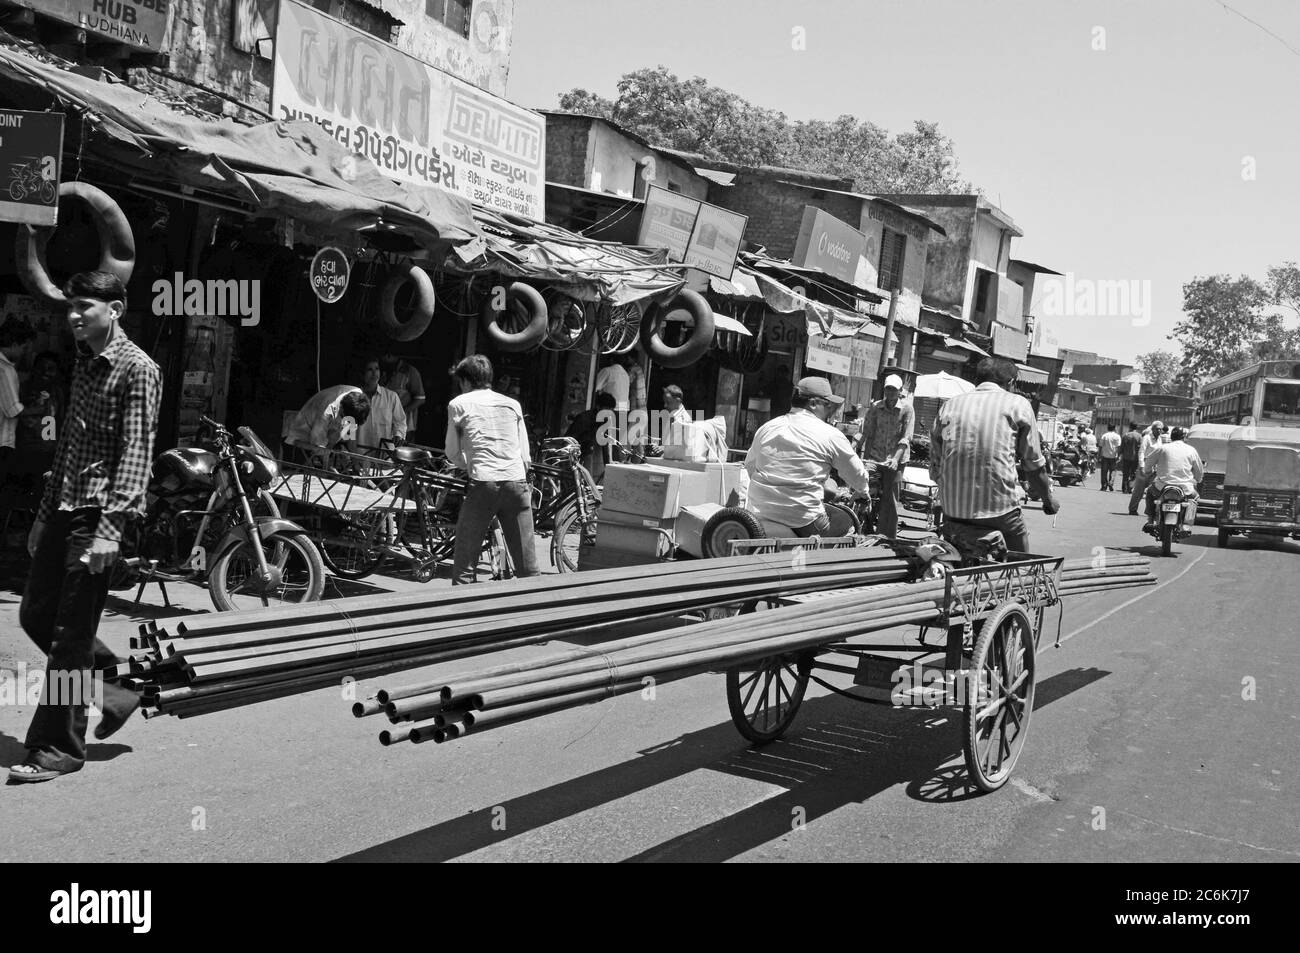 Eisenstangen, die auf einem Dreirad druch die Strassen von Ahmedabad gefahren werden | fer transporté sur une bicicle dans les rues d'Ahmedab Banque D'Images